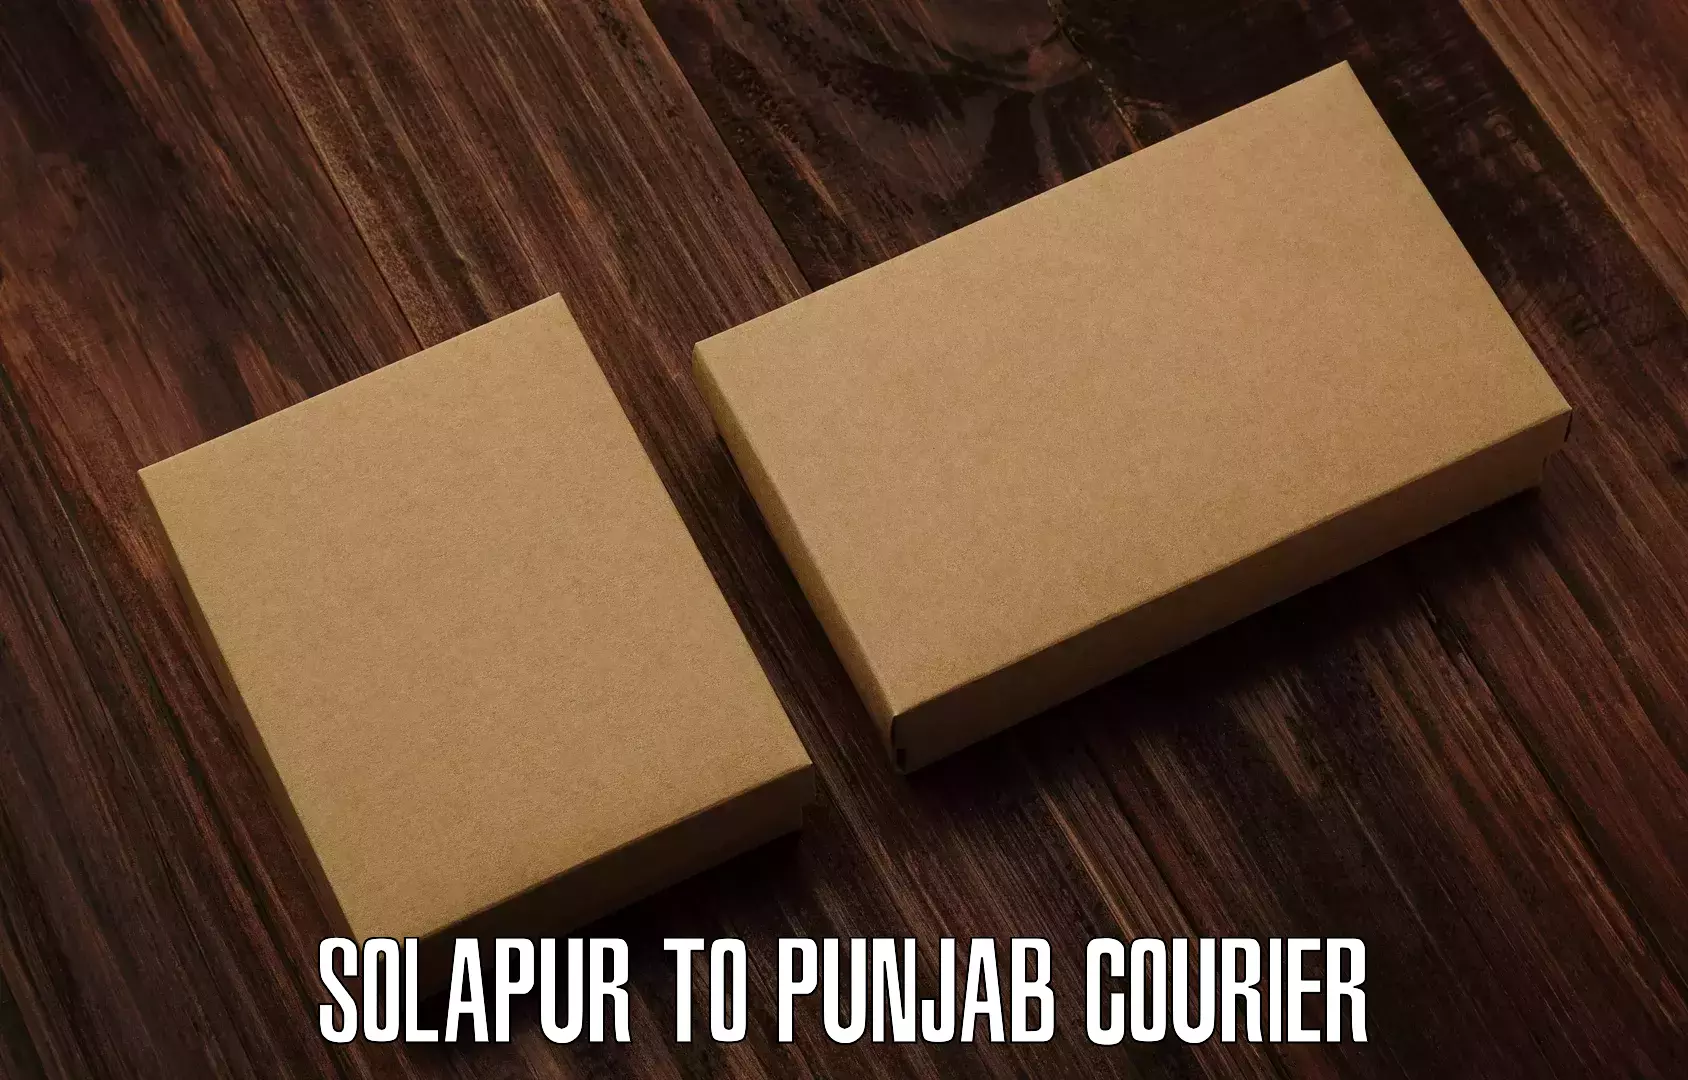 On-call courier service Solapur to Khanna